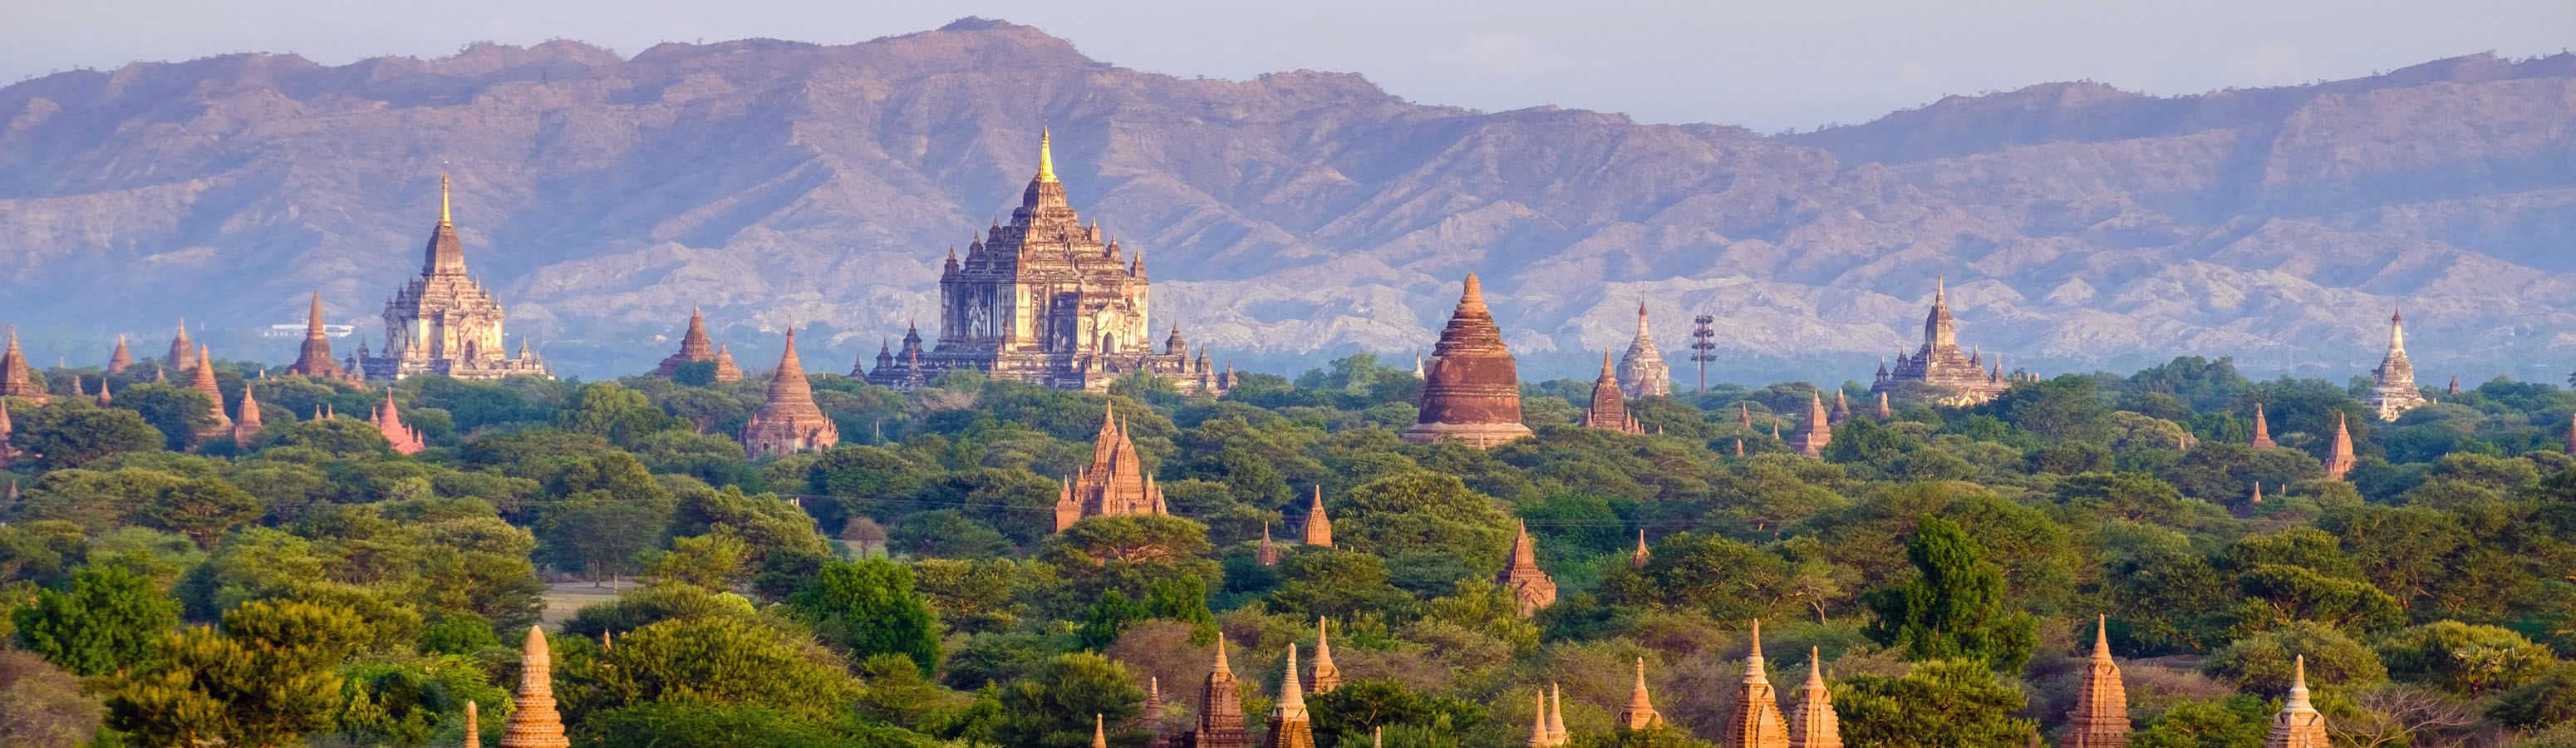 Objavte krásu Barmy